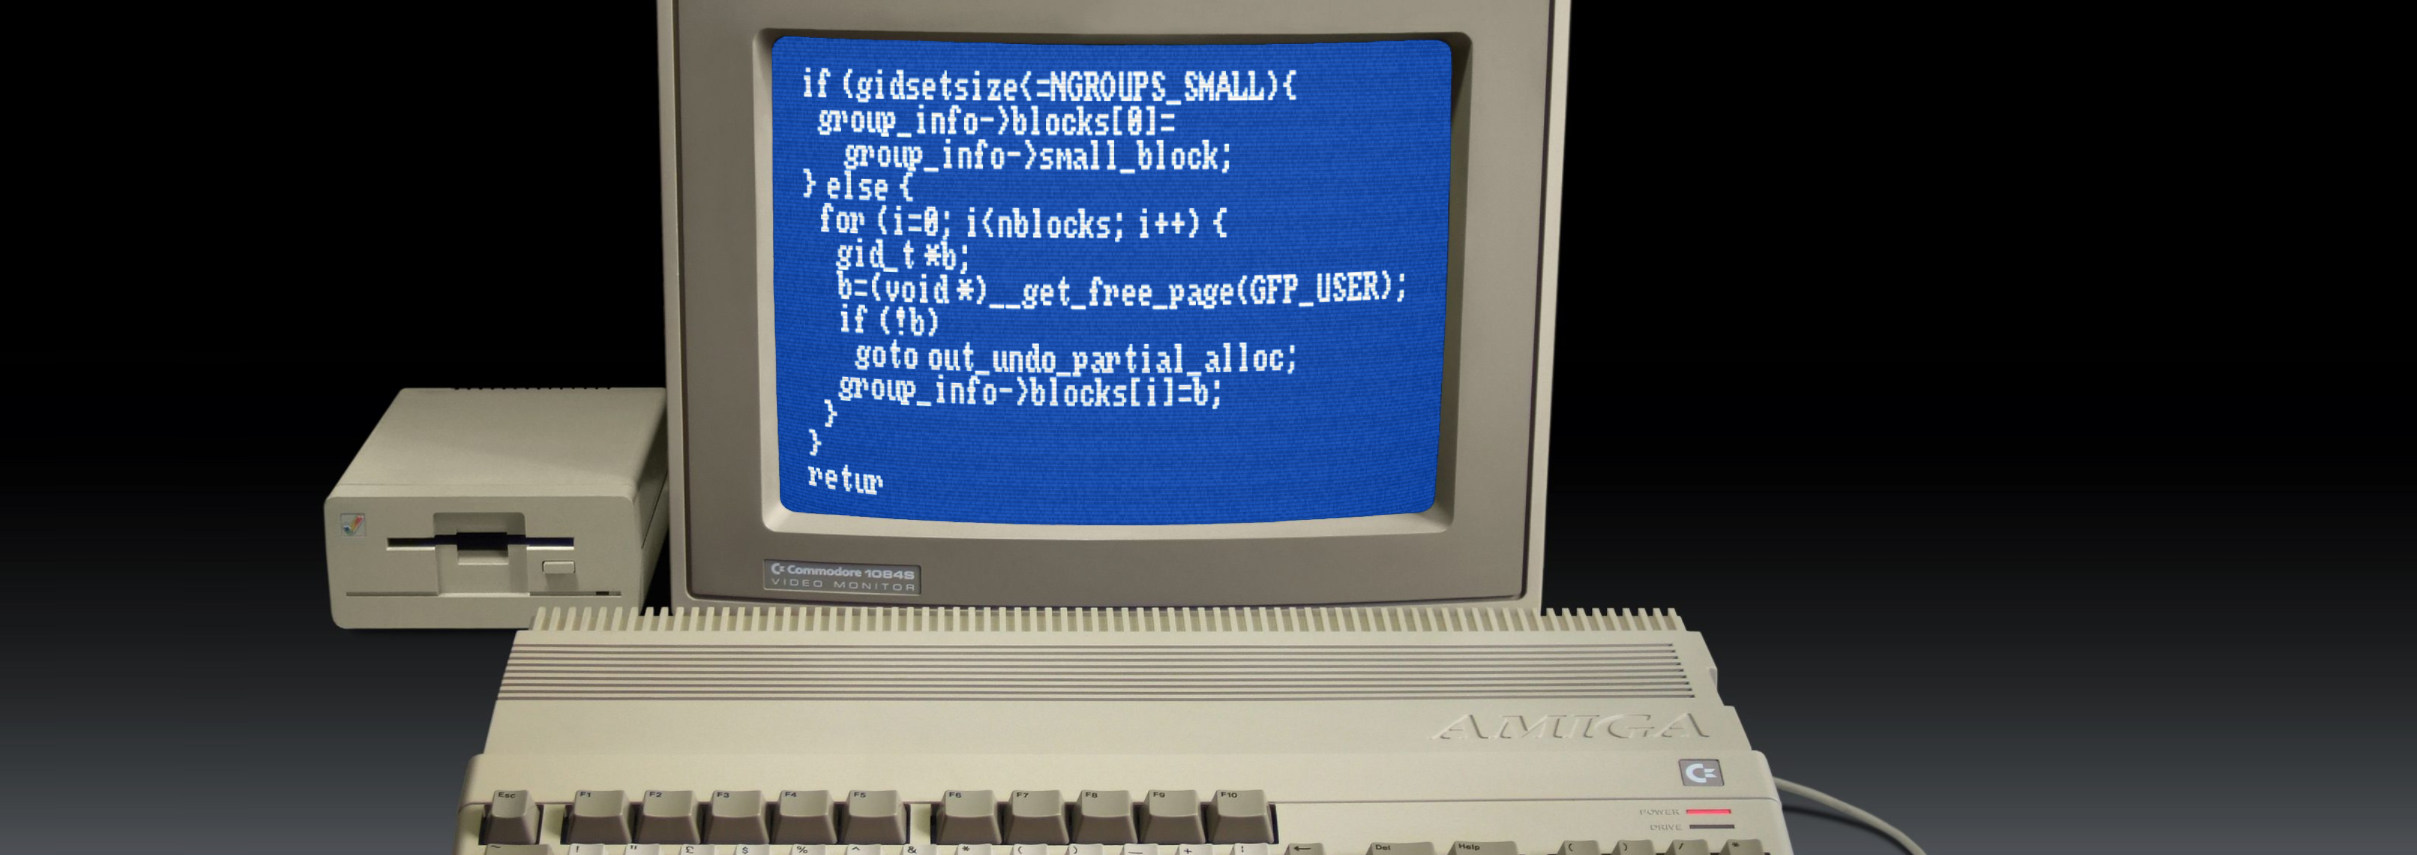 Commodore Amiga 500 Preview